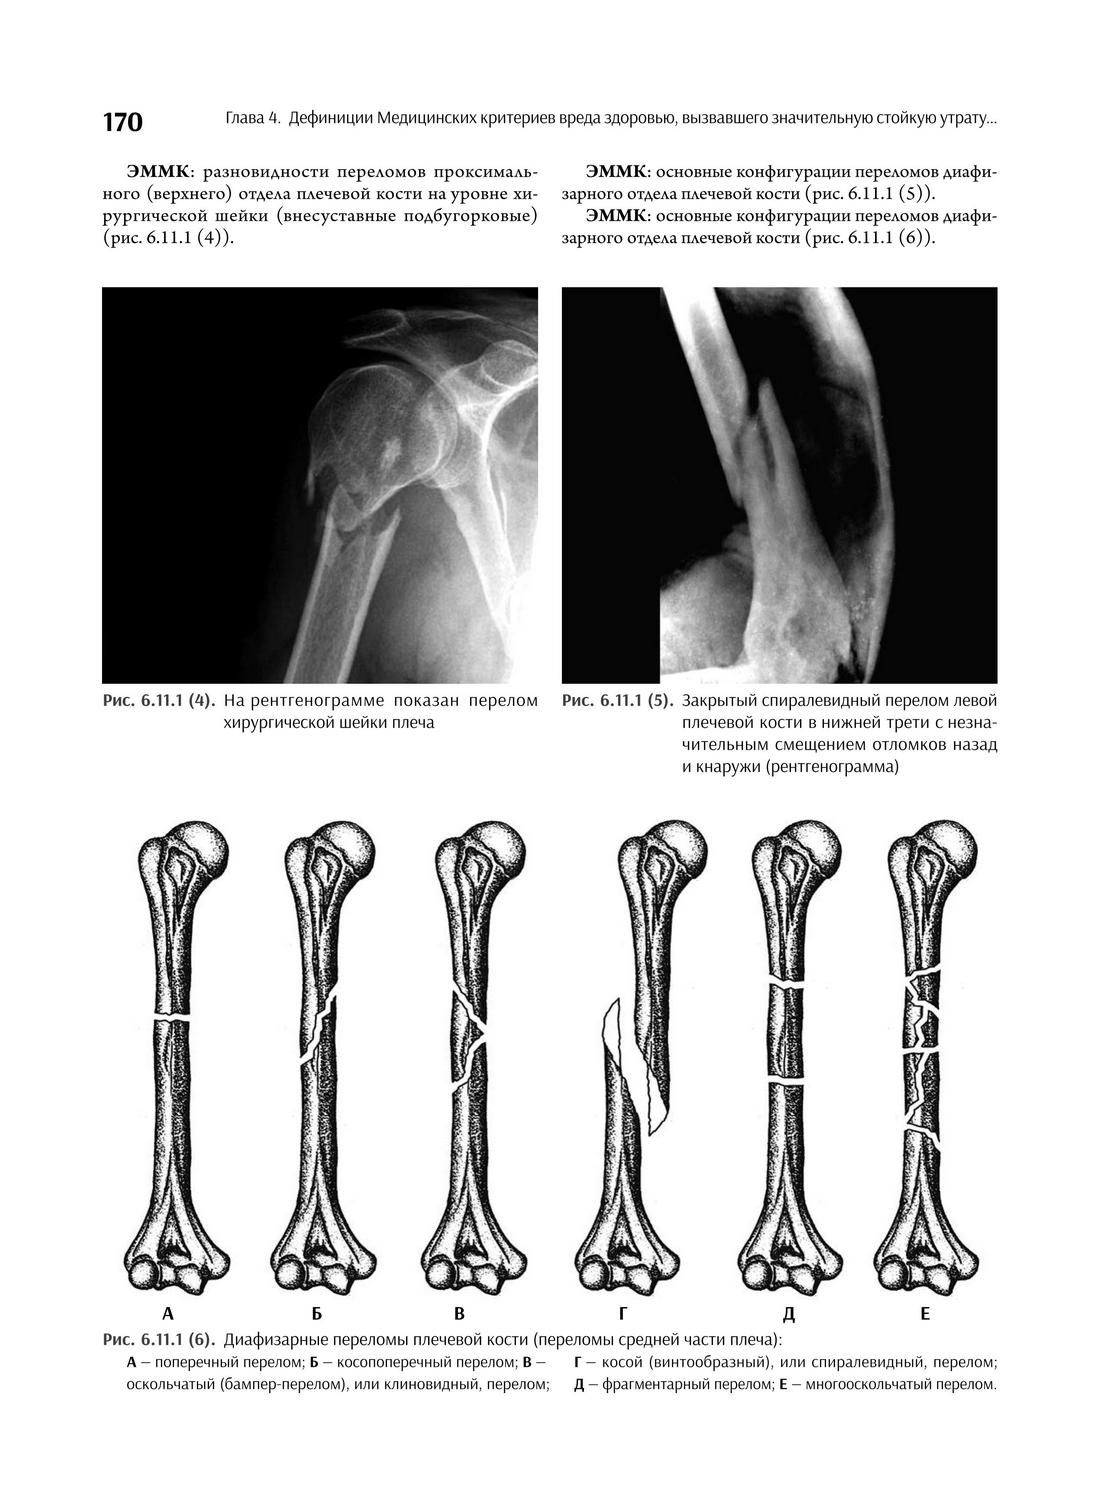 Диафизарные переломы плечевой кости (переломы средней части плеча)